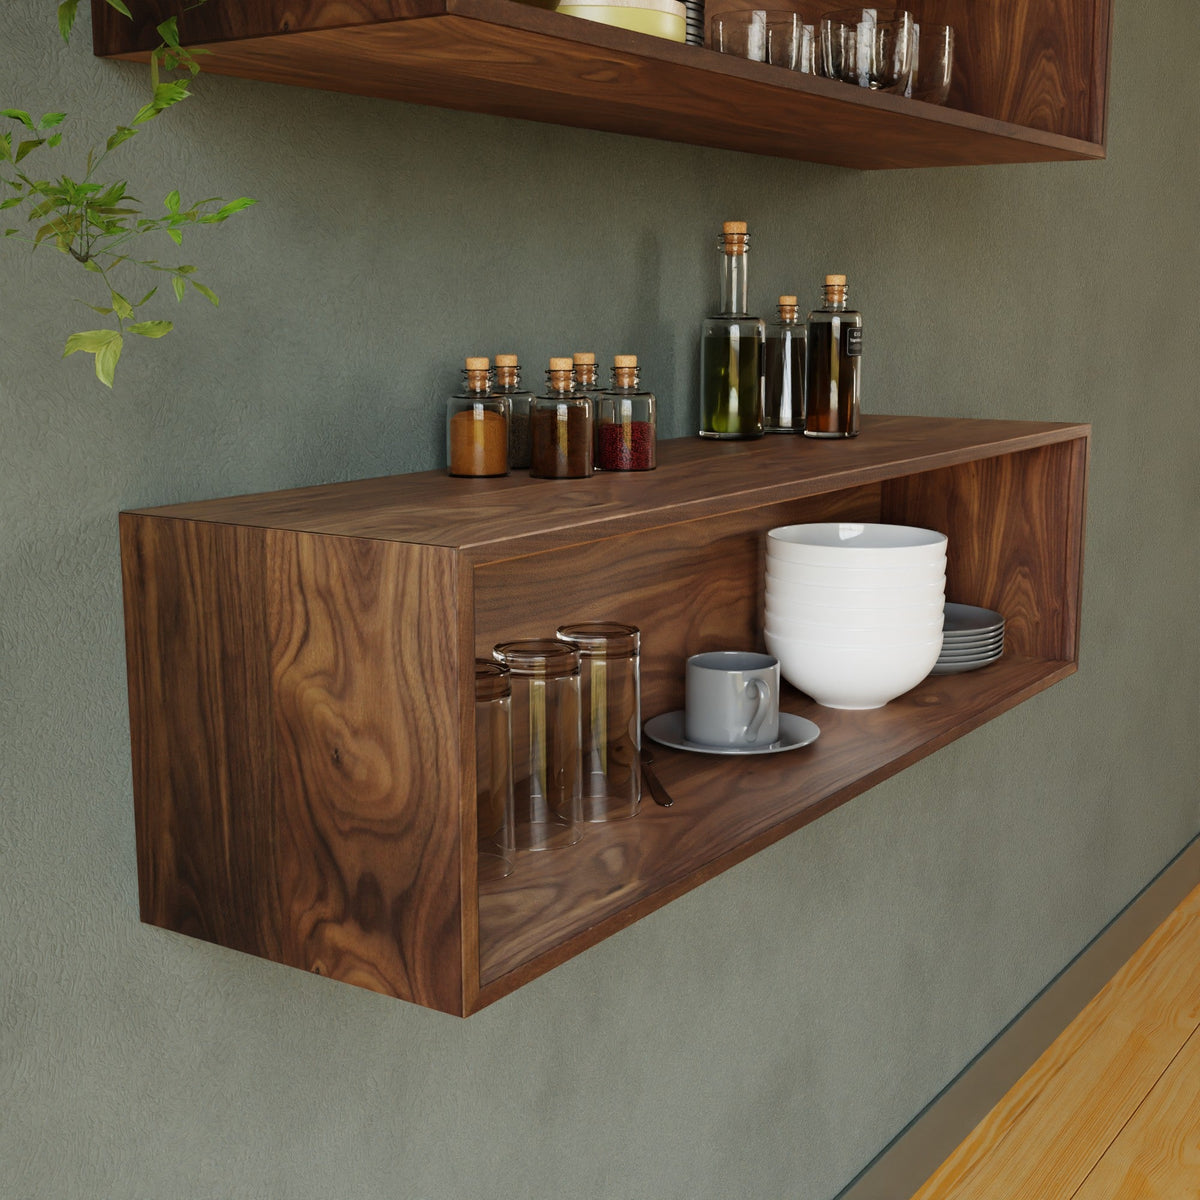 Solid Walnut Floating Cookbook Shelf – Krovel Furniture Co.